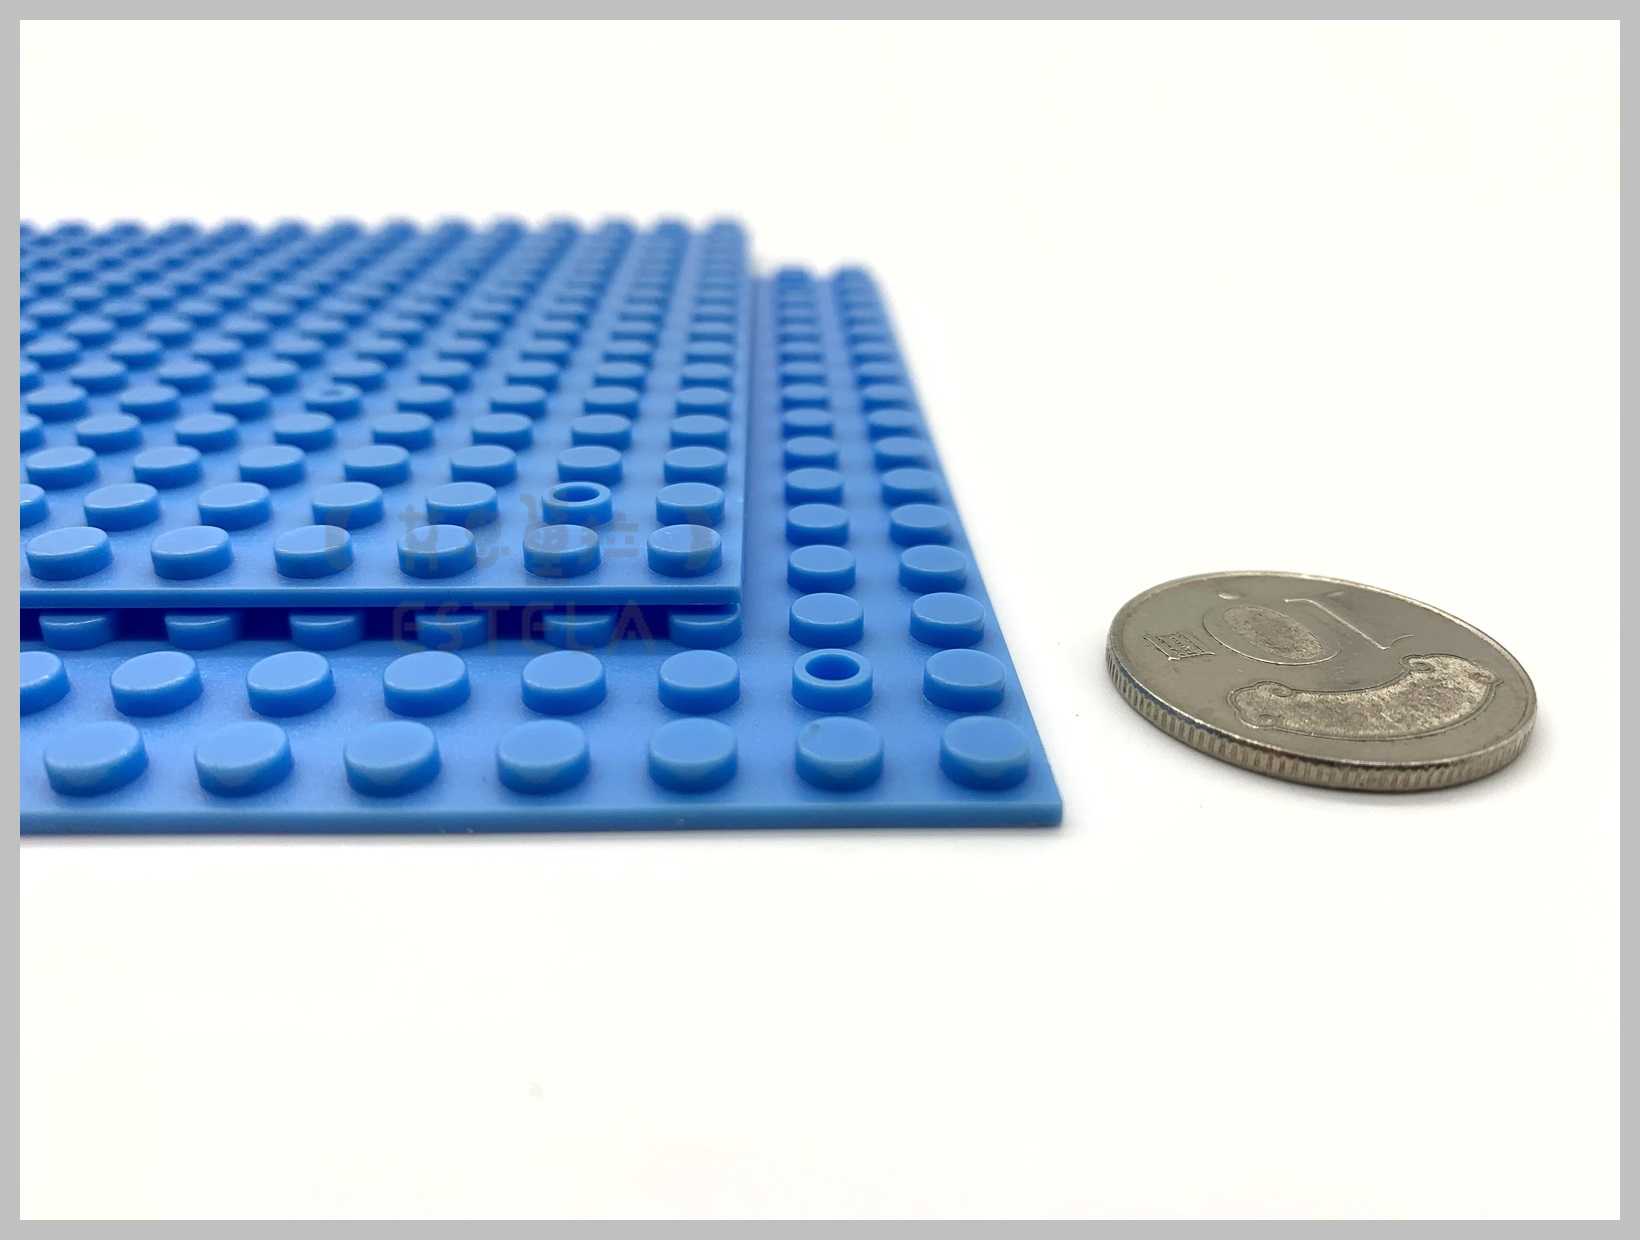 【艾思黛拉 A0131】樂高相容 小顆粒 單面底板 16*32顆粒 10色可選 25.5x13公分 積木 LEGO 現貨